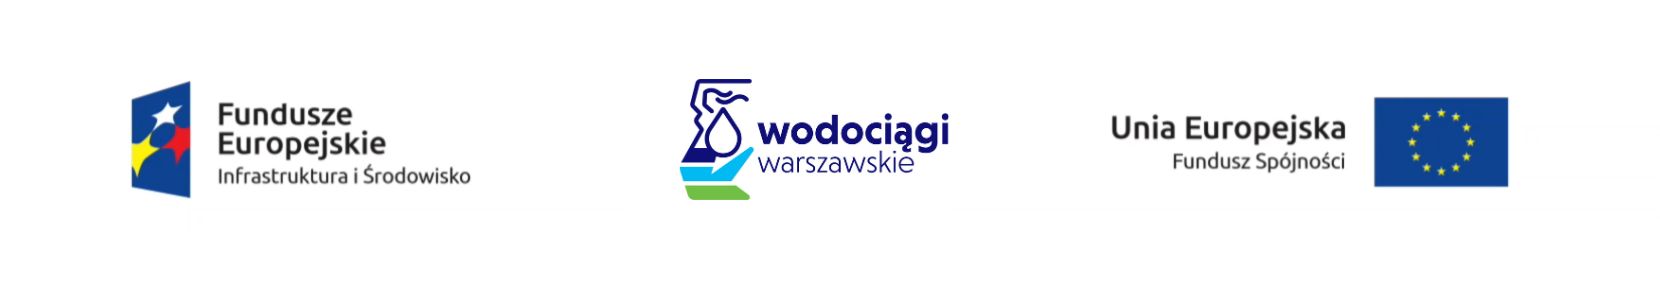 logo Fundusze Europejskie Infrastruktura i Środowisko, logo Wodociągi Warszawskie, logo Unia Europejska Fundusz Spójności